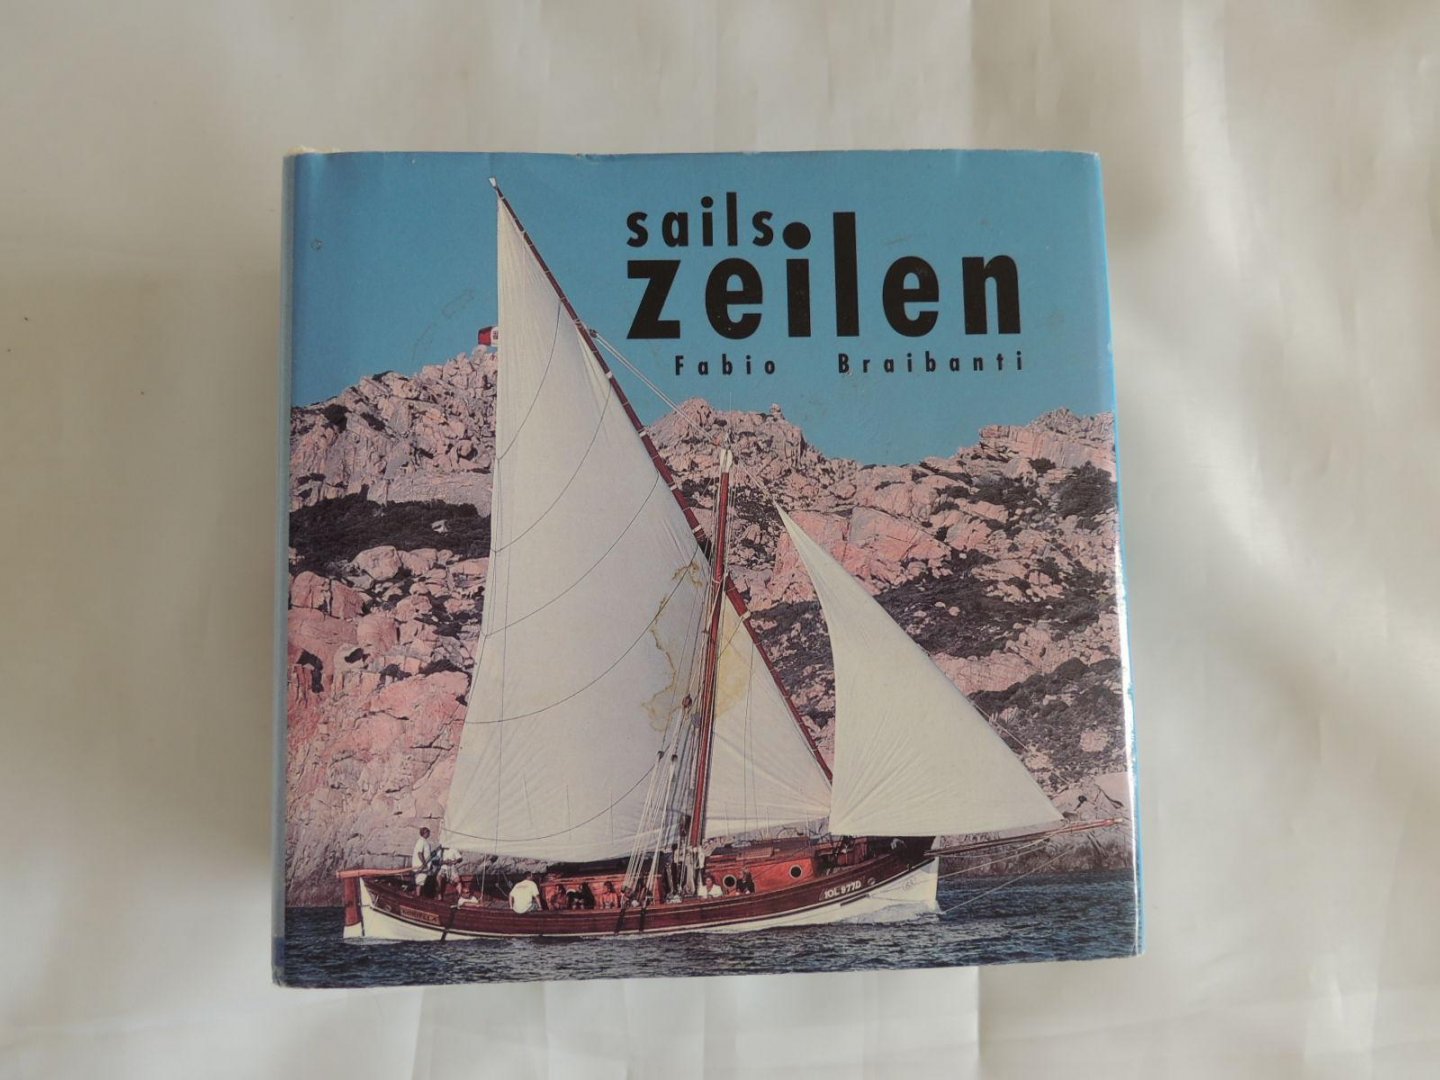 Serra, Valeria & Braibanti, Fabio - Zeilen, Sails